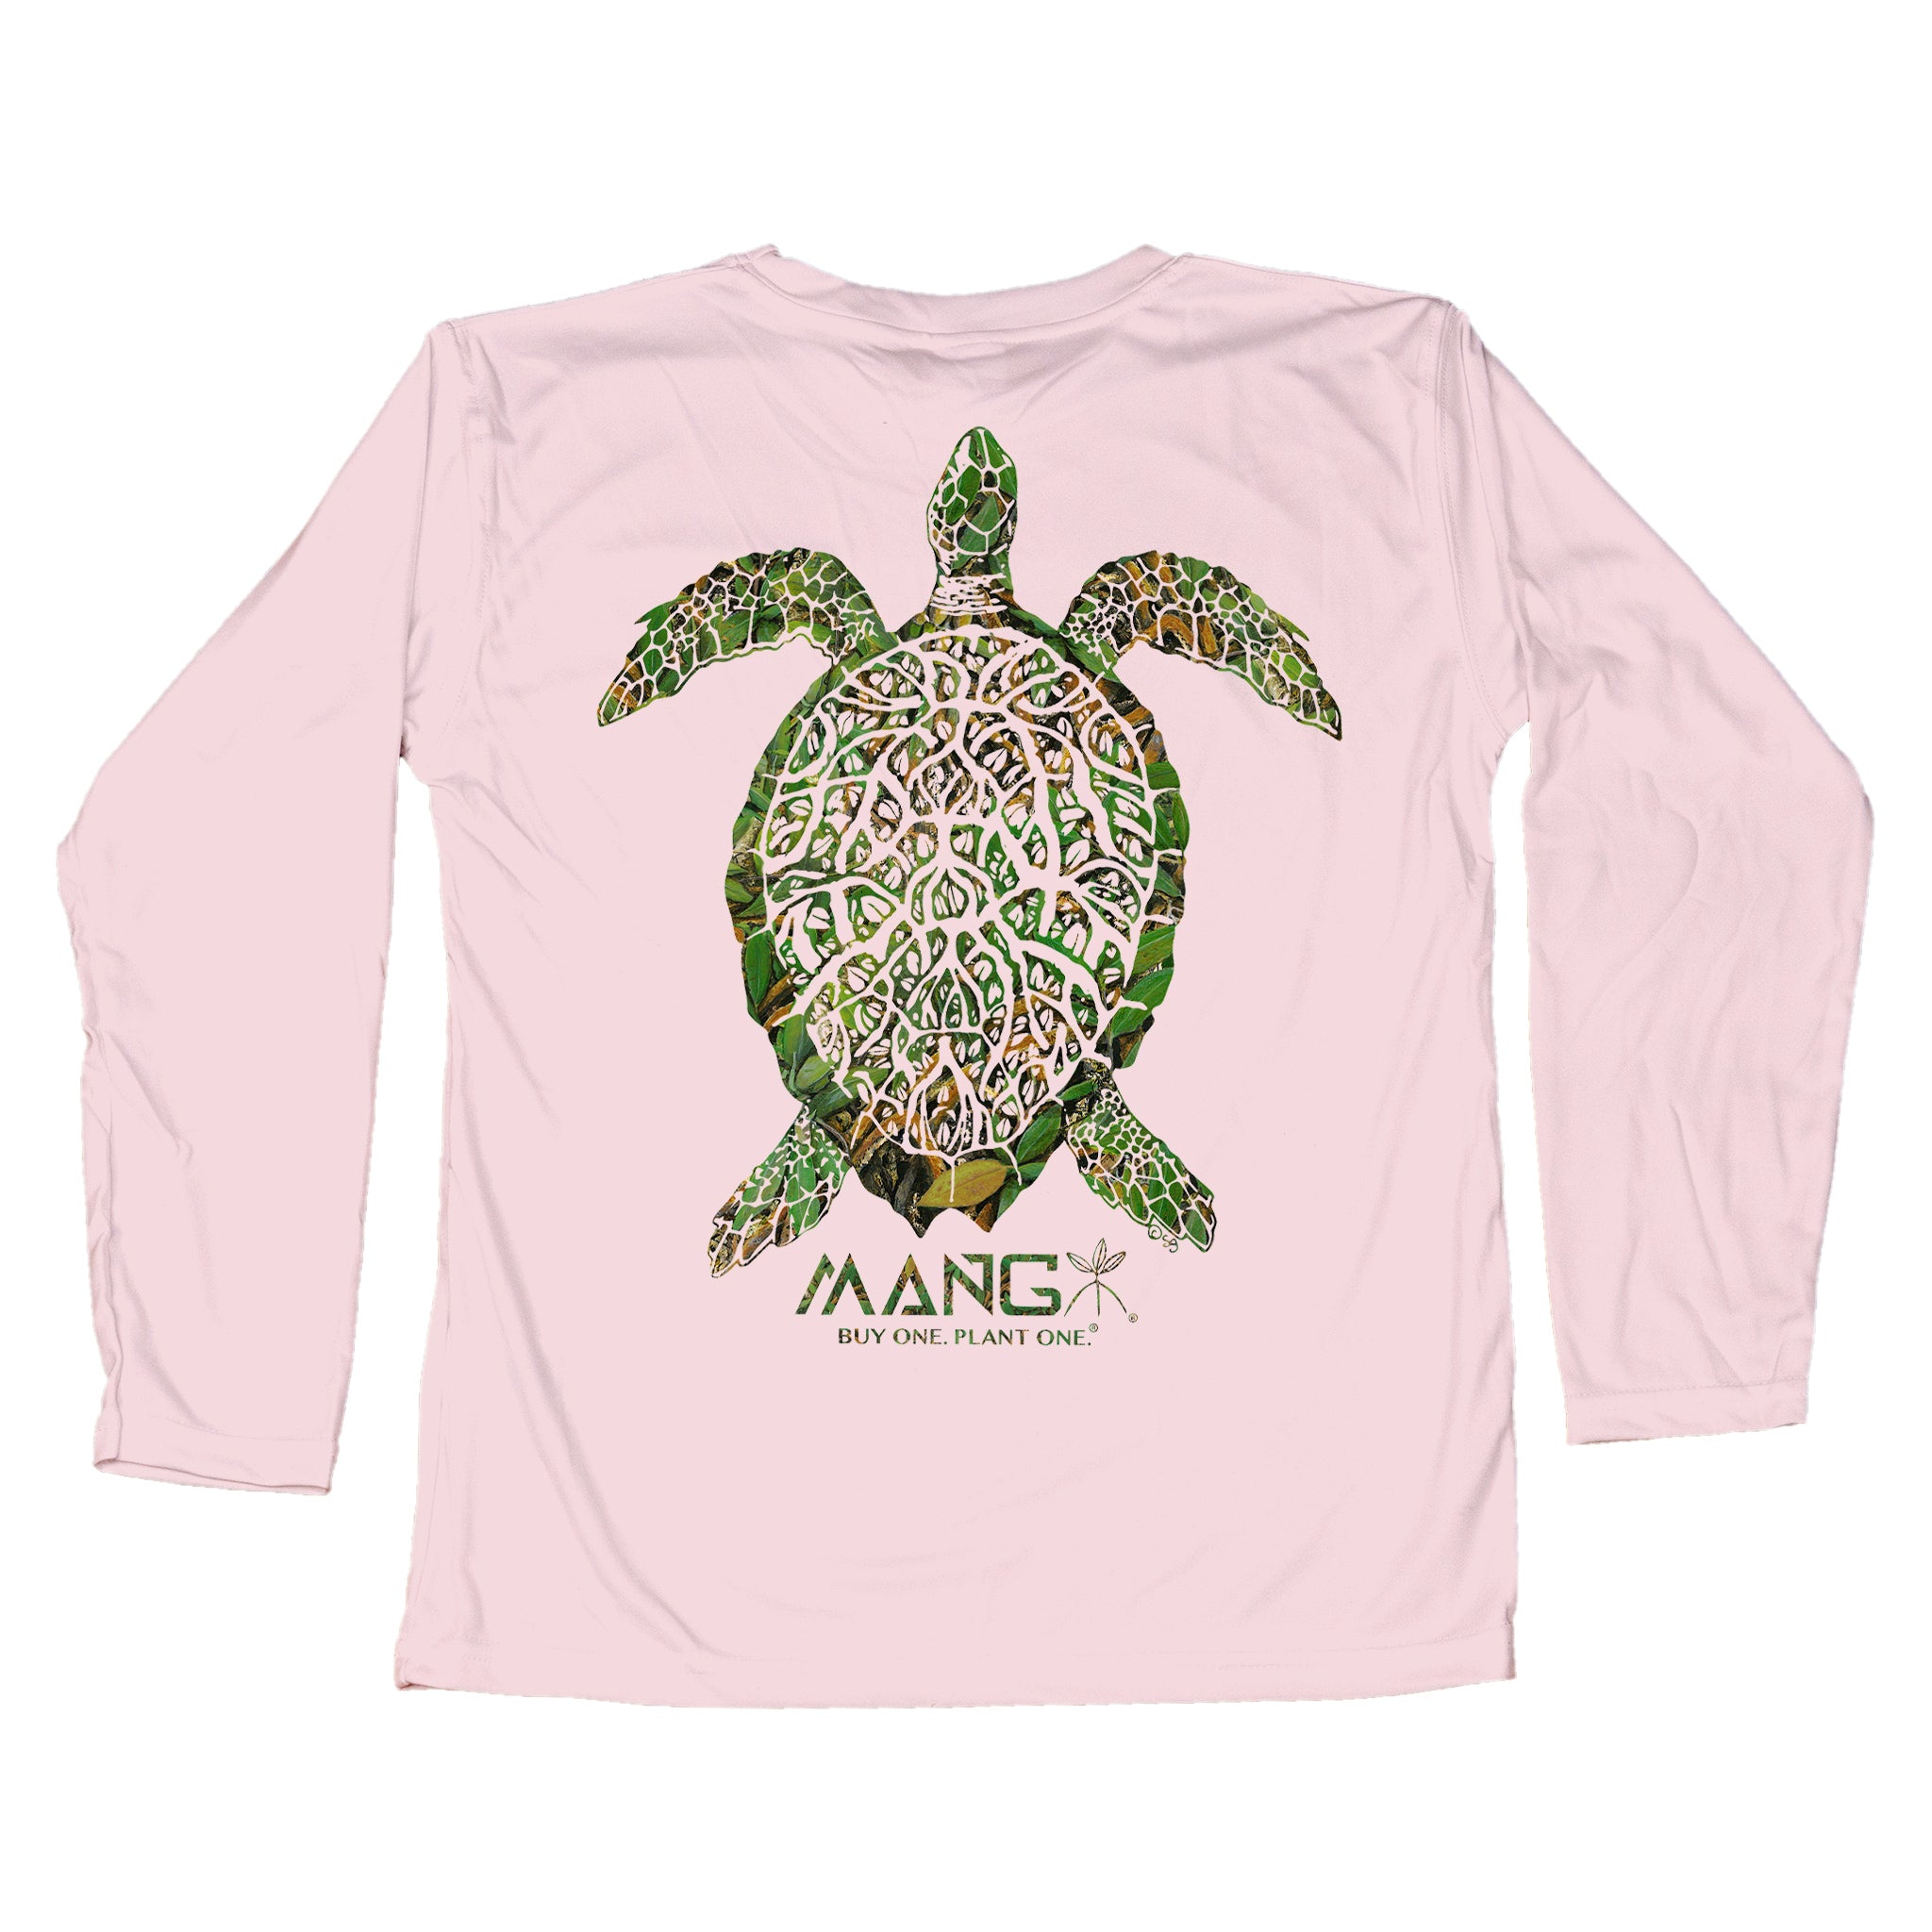 MANG Grassy Turtle - Toddler - 3T-Pink